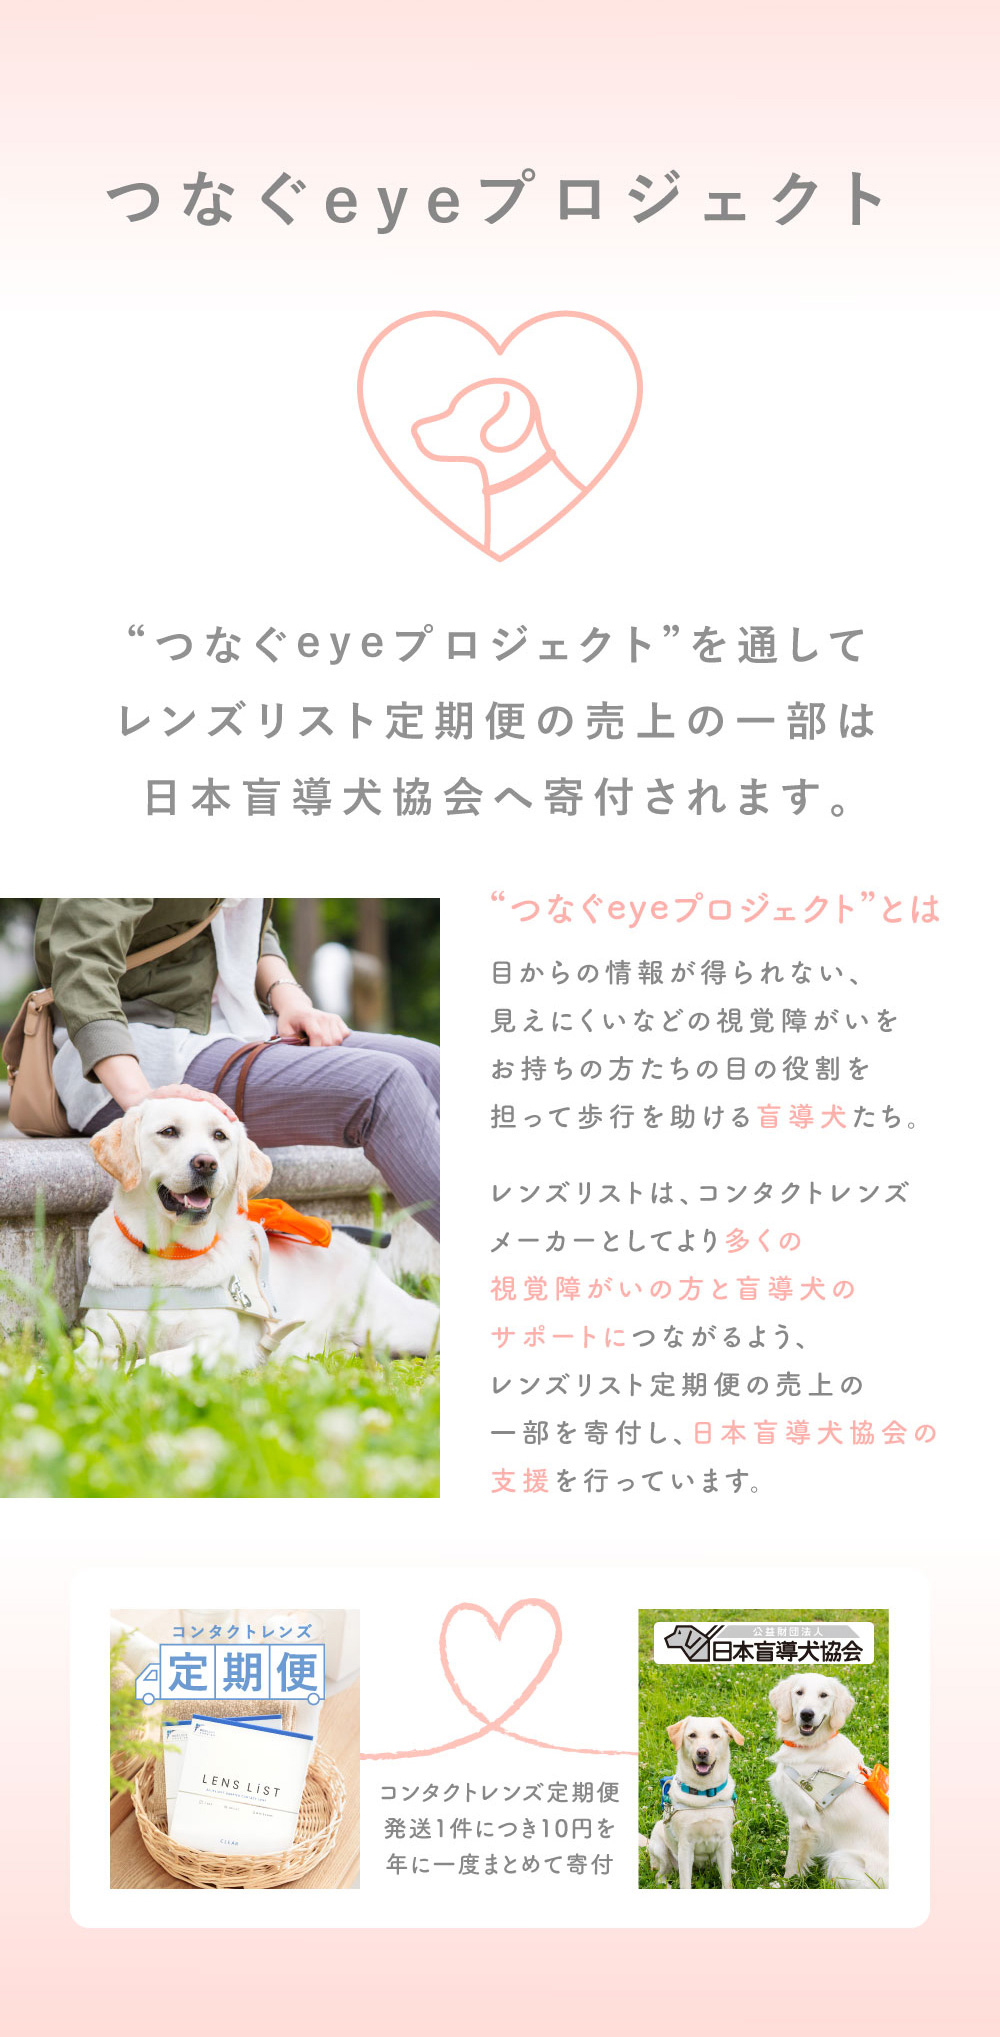 つなぐeyeプロジェクト “つなぐeyeプロジェクト”を通してレンズリスト定期便の売上の一部は 日本盲導犬協会へ寄付されます。コンタクトレンズ定期便発送1件につき10円を 年に一度まとめて寄付